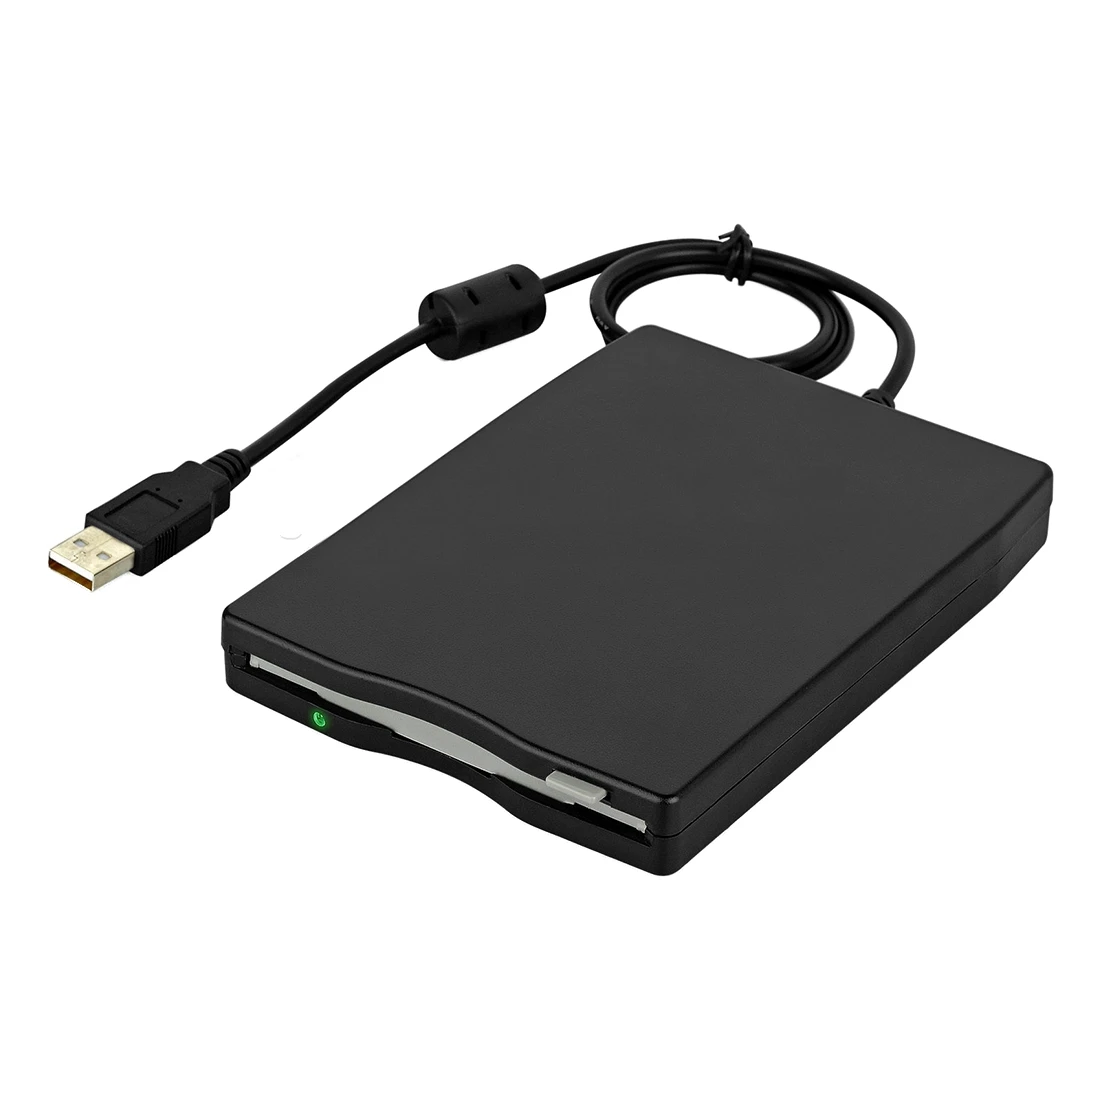 3," USB внешний портативный дисковод гибких дисков 1,44 МБ для хранения данных для ПК и ноутбуков